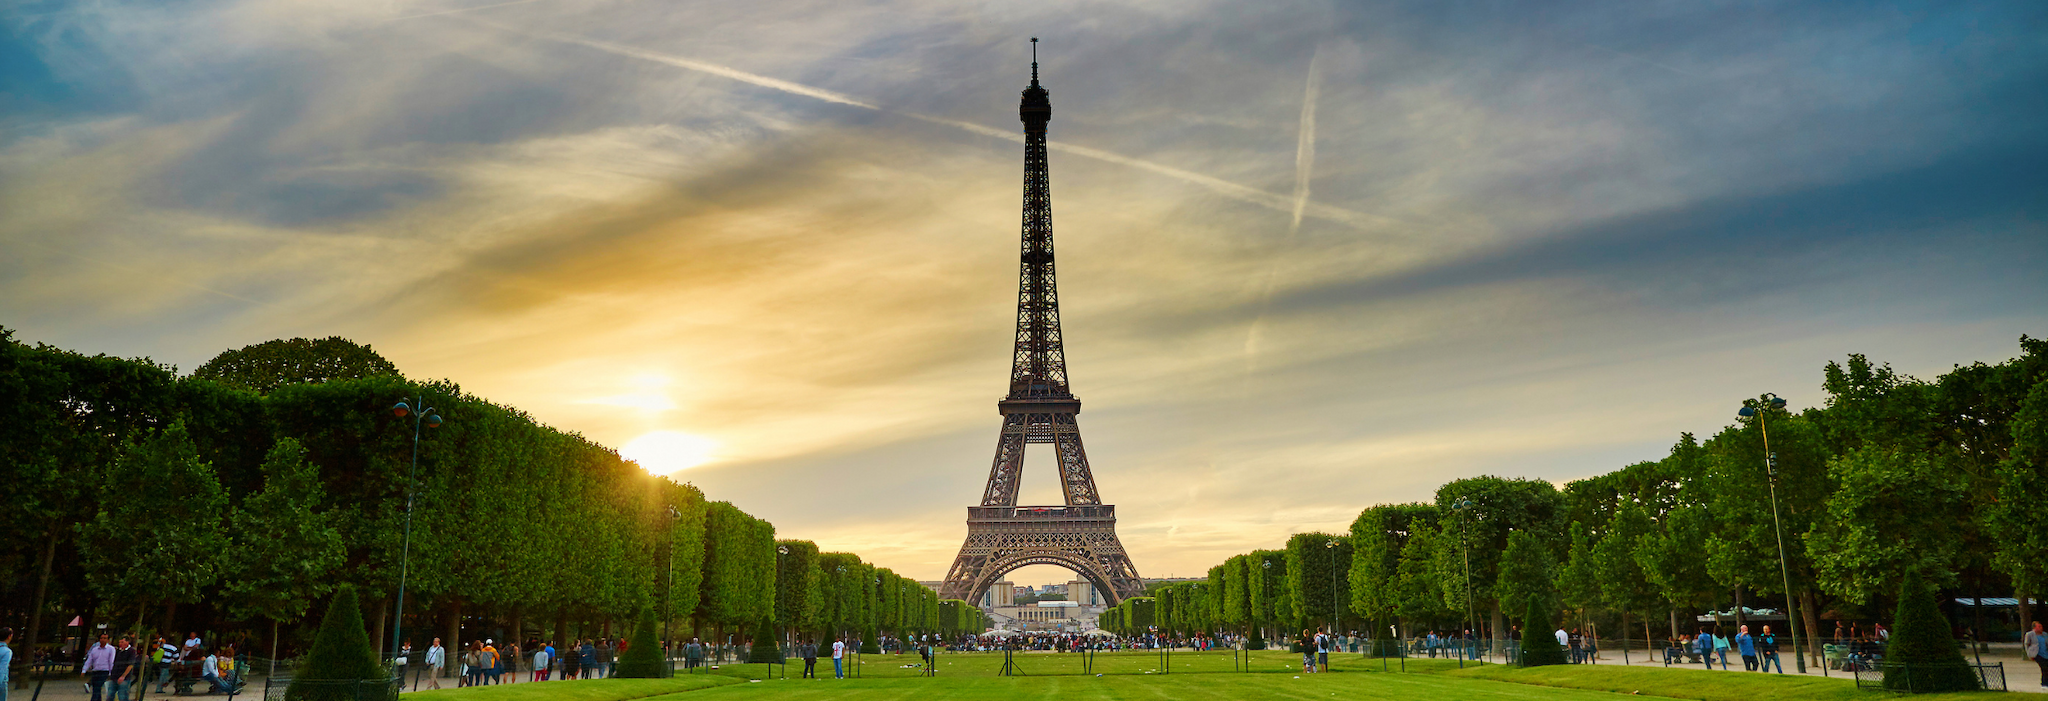 Top honeymoon destinations in 2015 - Paris